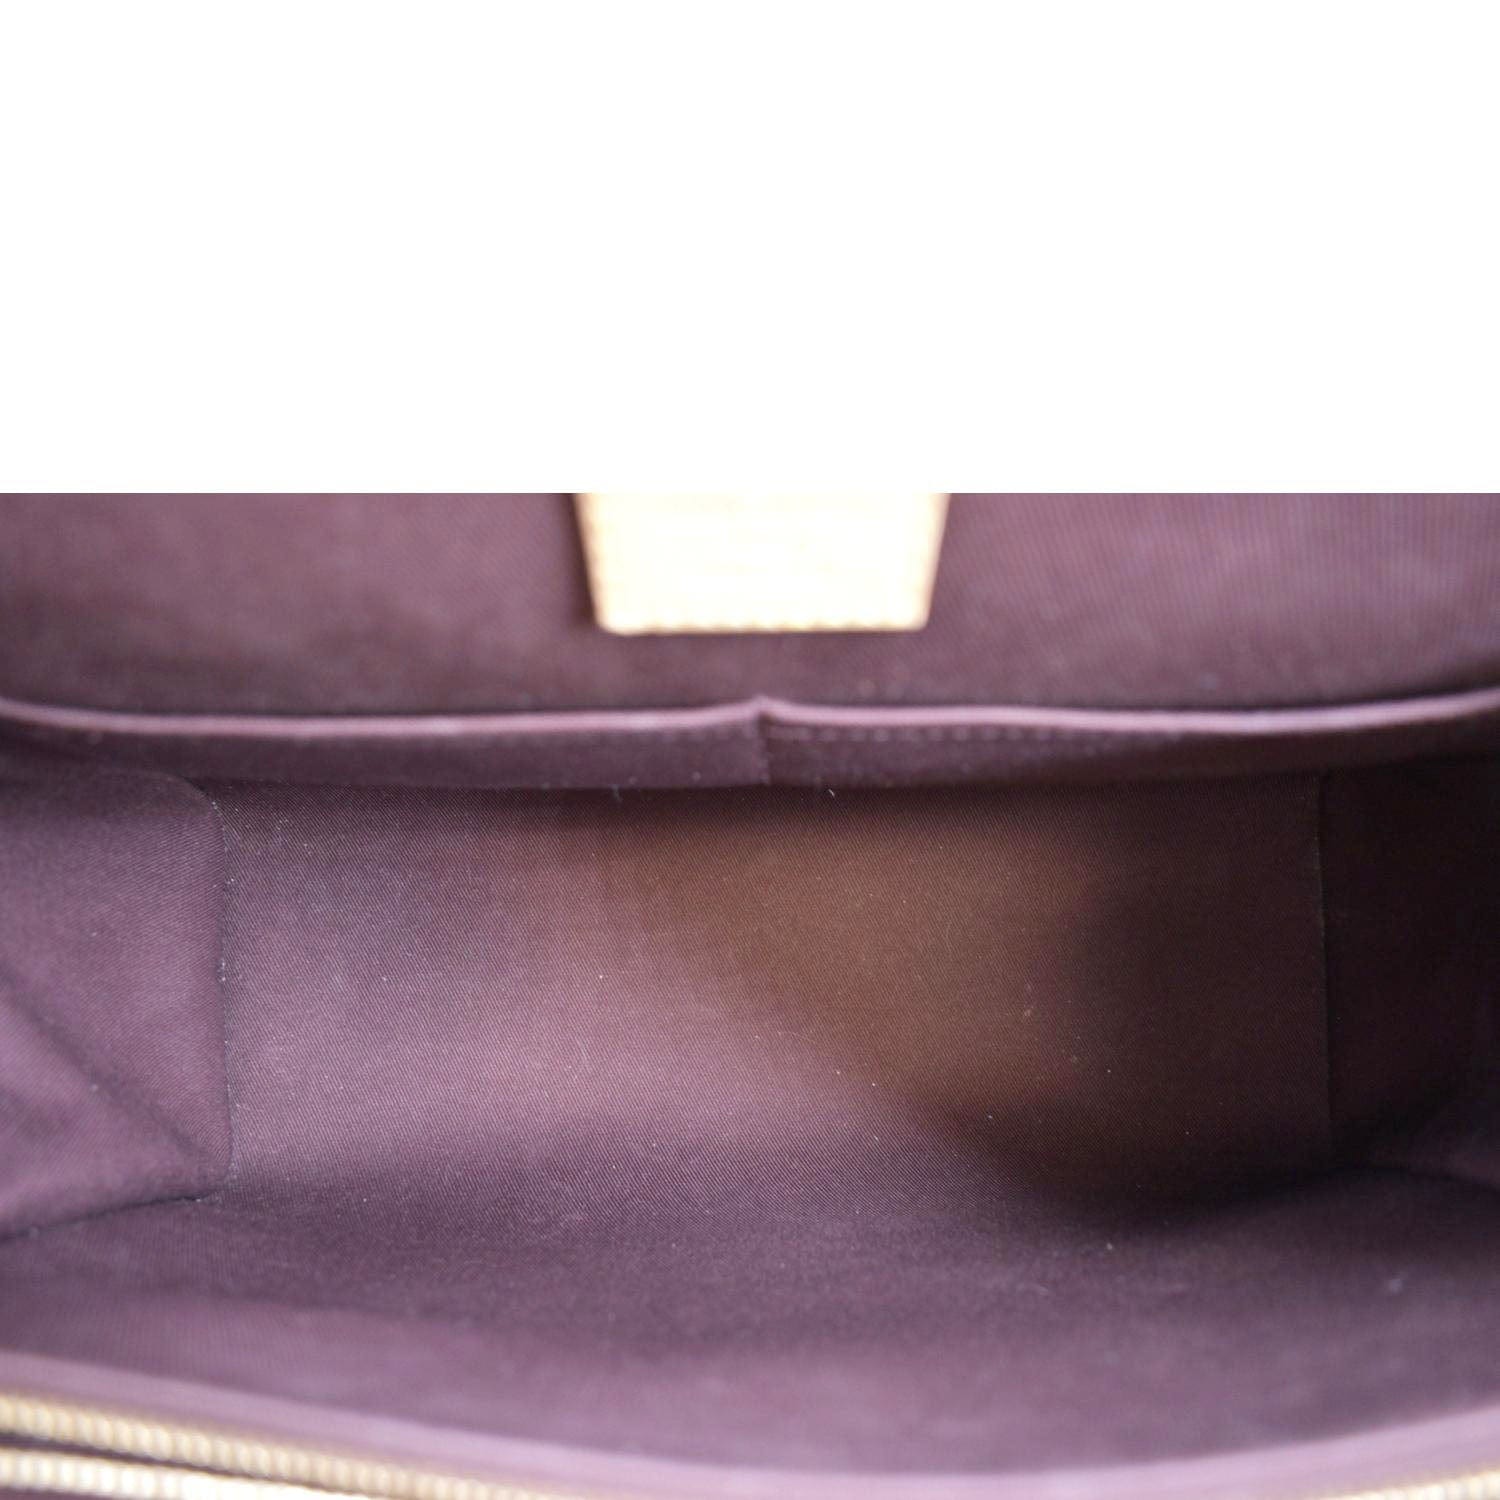 Cluny MM Monogram Canvas - Handbags